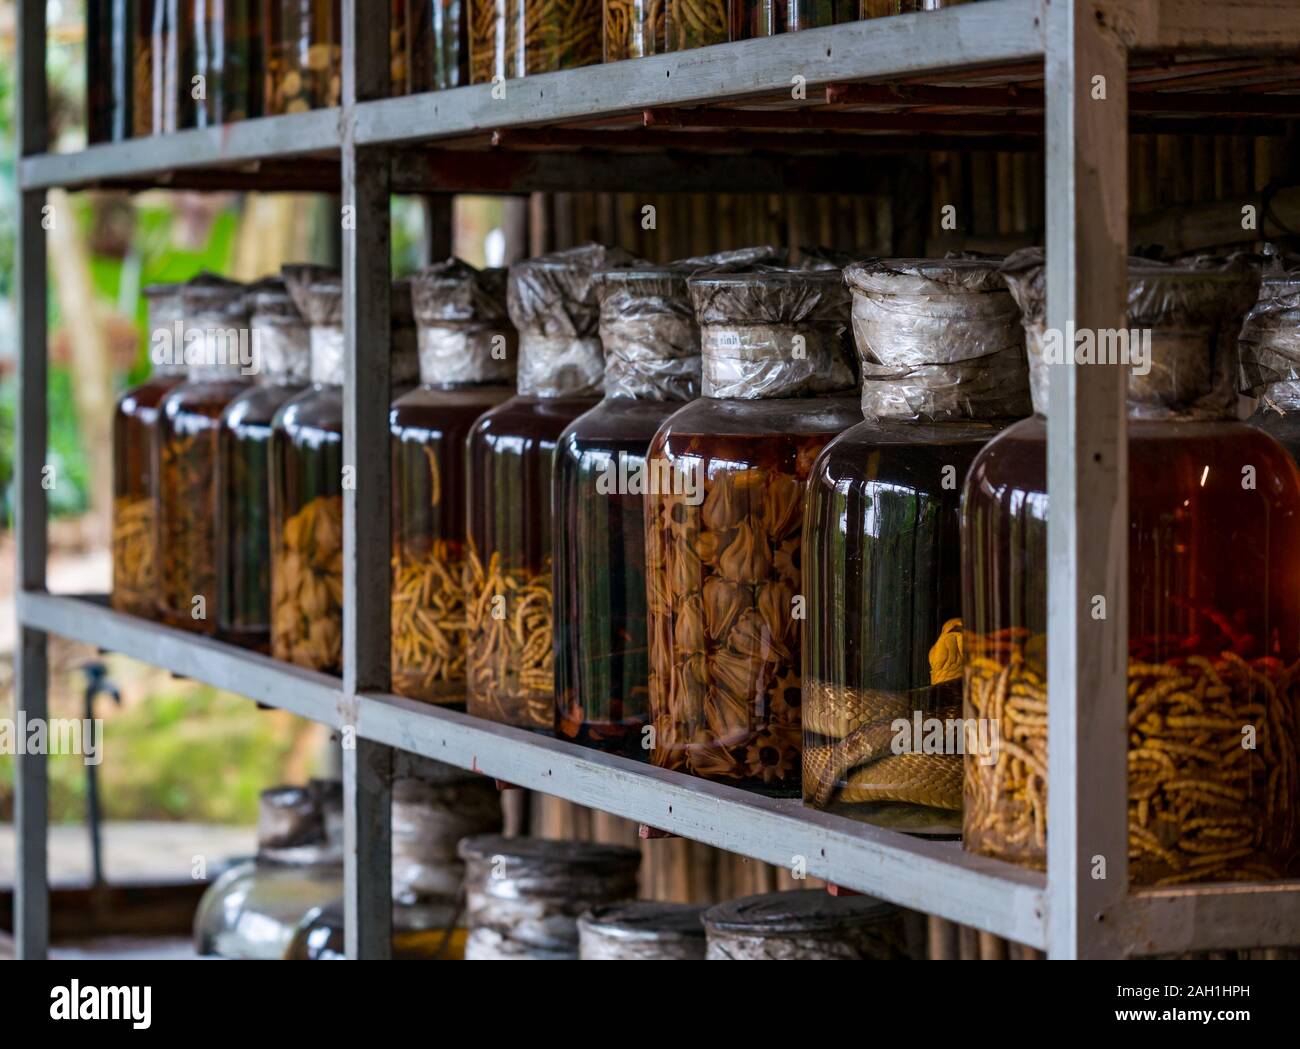 Traditionelle Heilmittel mit eingelegten erhalten Maden & Schlange in Gläsern, Thai Hai ethnischen Dorf, Thai Nguyen Provinz, Vietnam, Asien Stockfoto